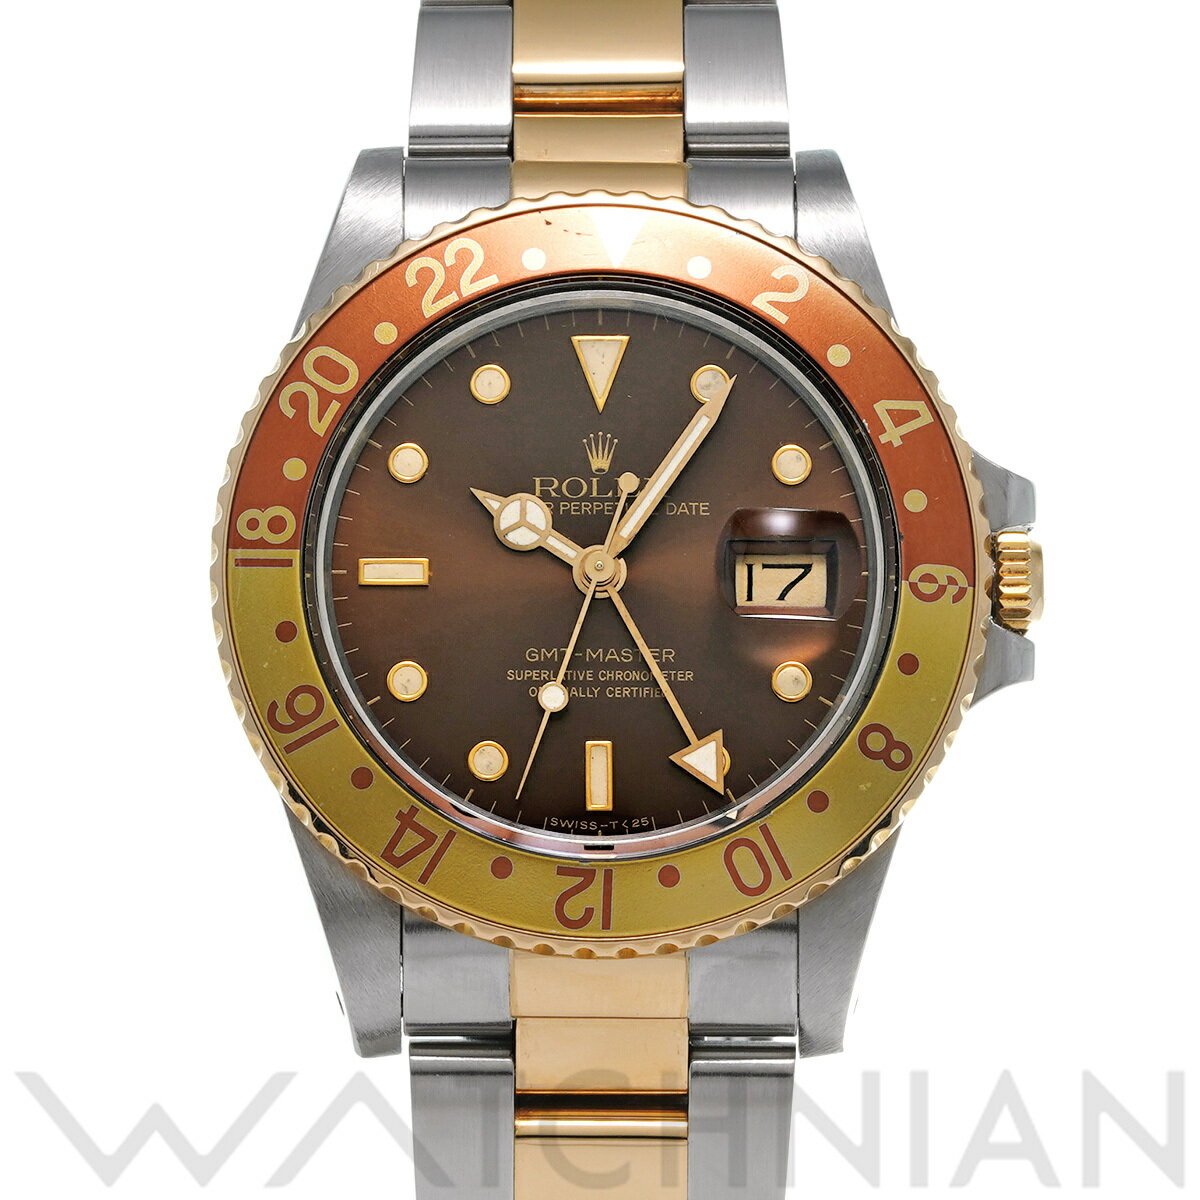 【4種選べるクーポン】【ローン60回払い無金利】【中古】 ロレックス ROLEX GMTマスター 16753 94番台(1986年頃製造) ブラウン メンズ 腕時計 ロレックス 時計 高級腕時計 ブランド